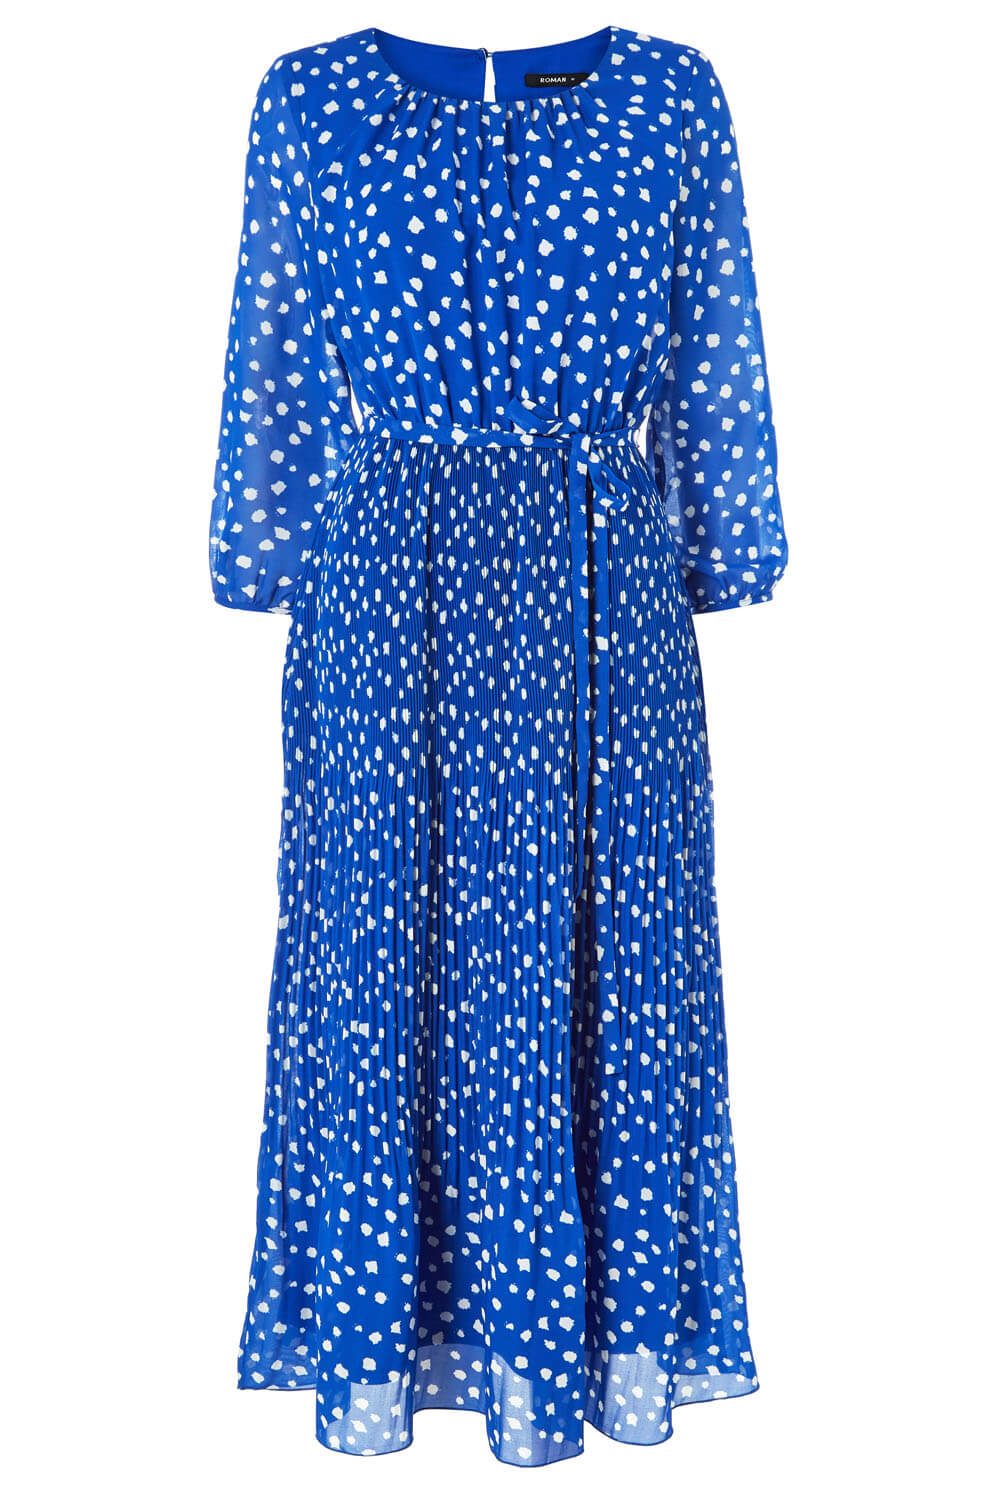 Spot Print Pleated Midi Dress in Royal Blue - Roman Originals UK